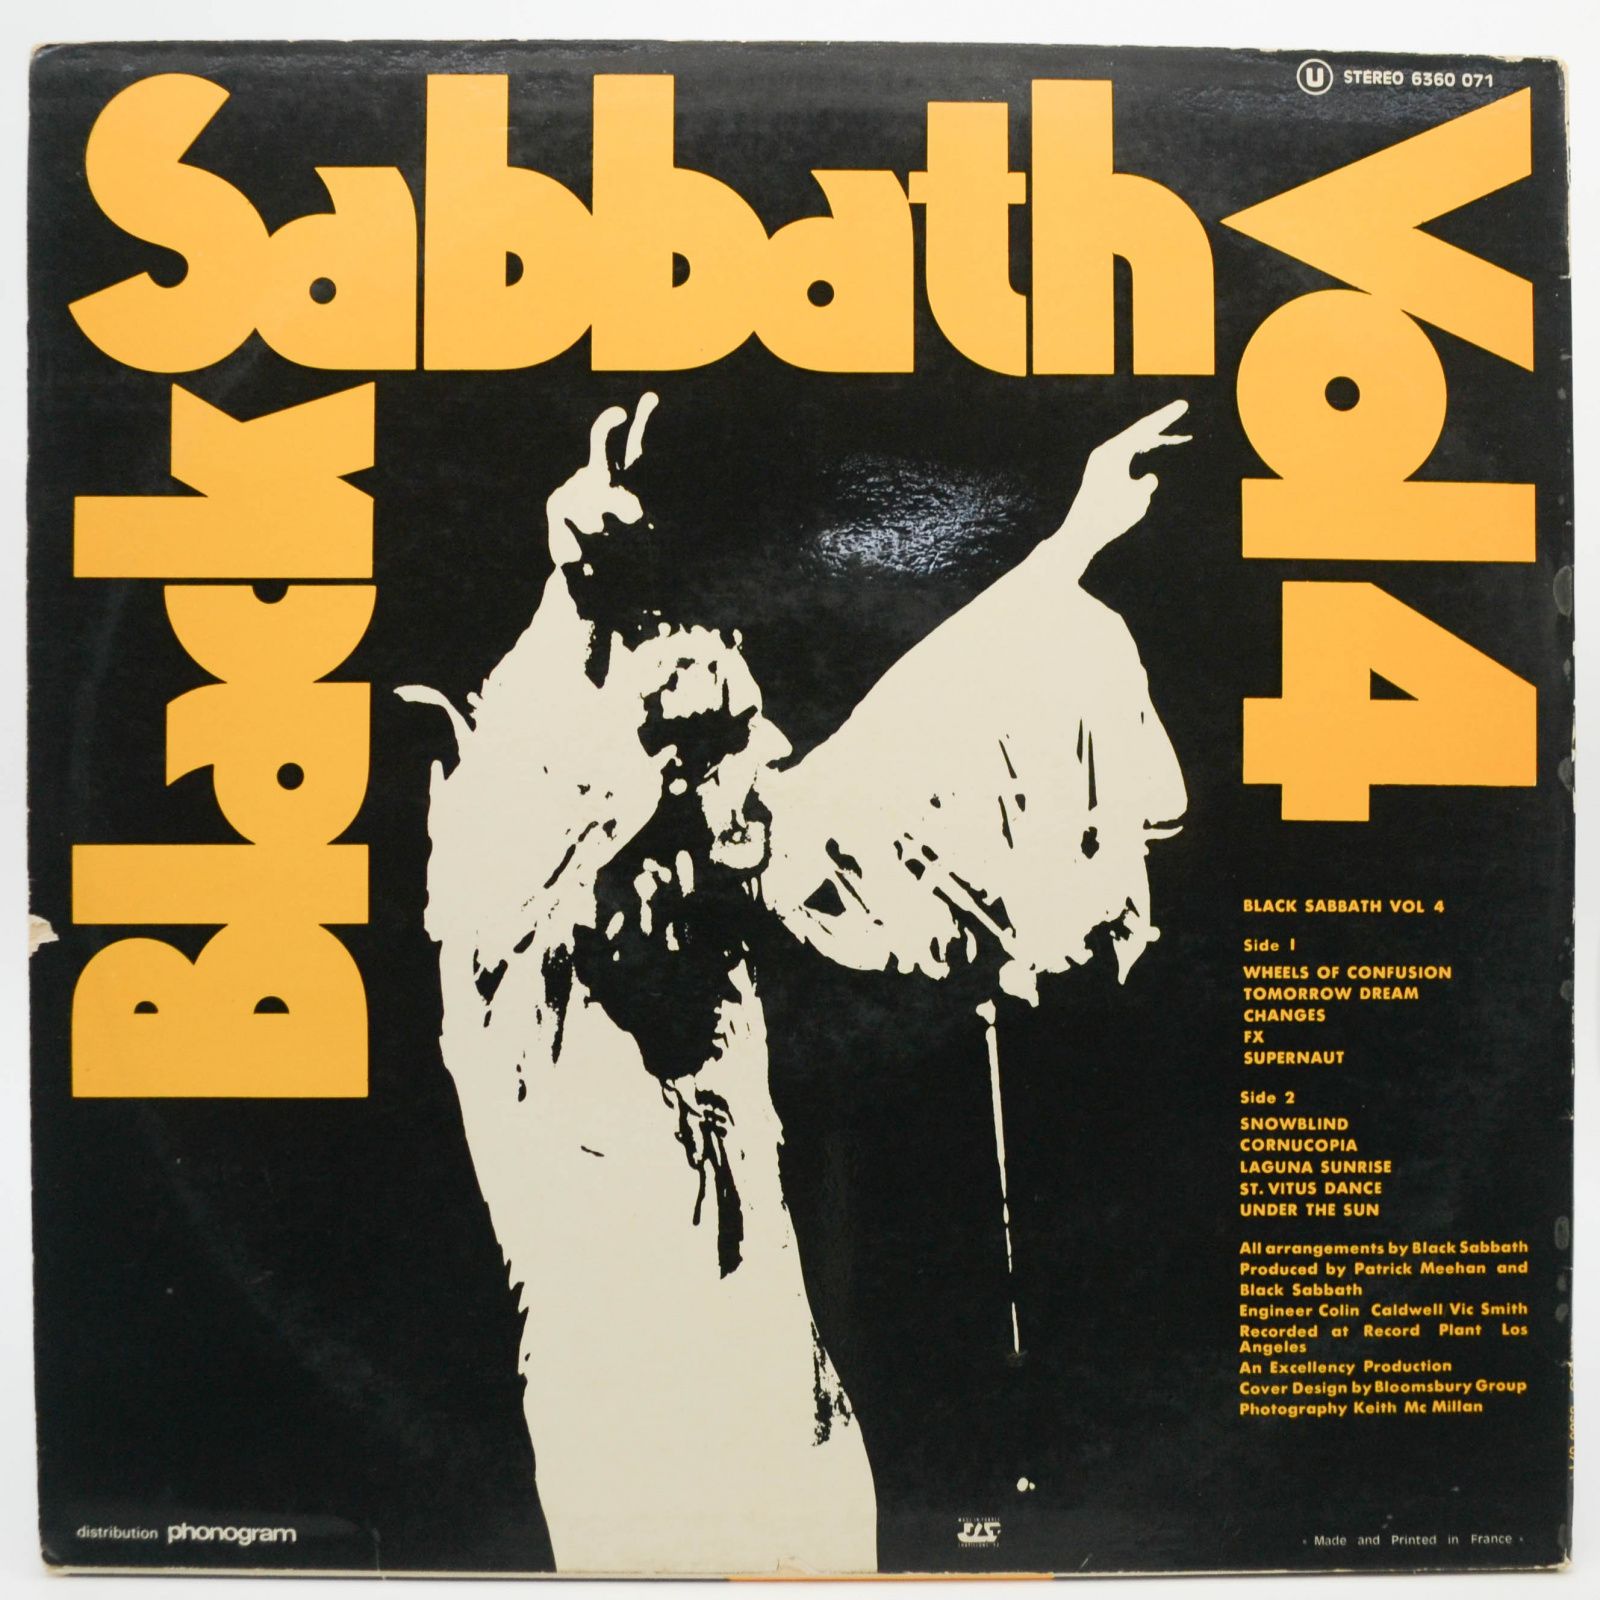 Black Sabbath — Black Sabbath Vol 4, 1972